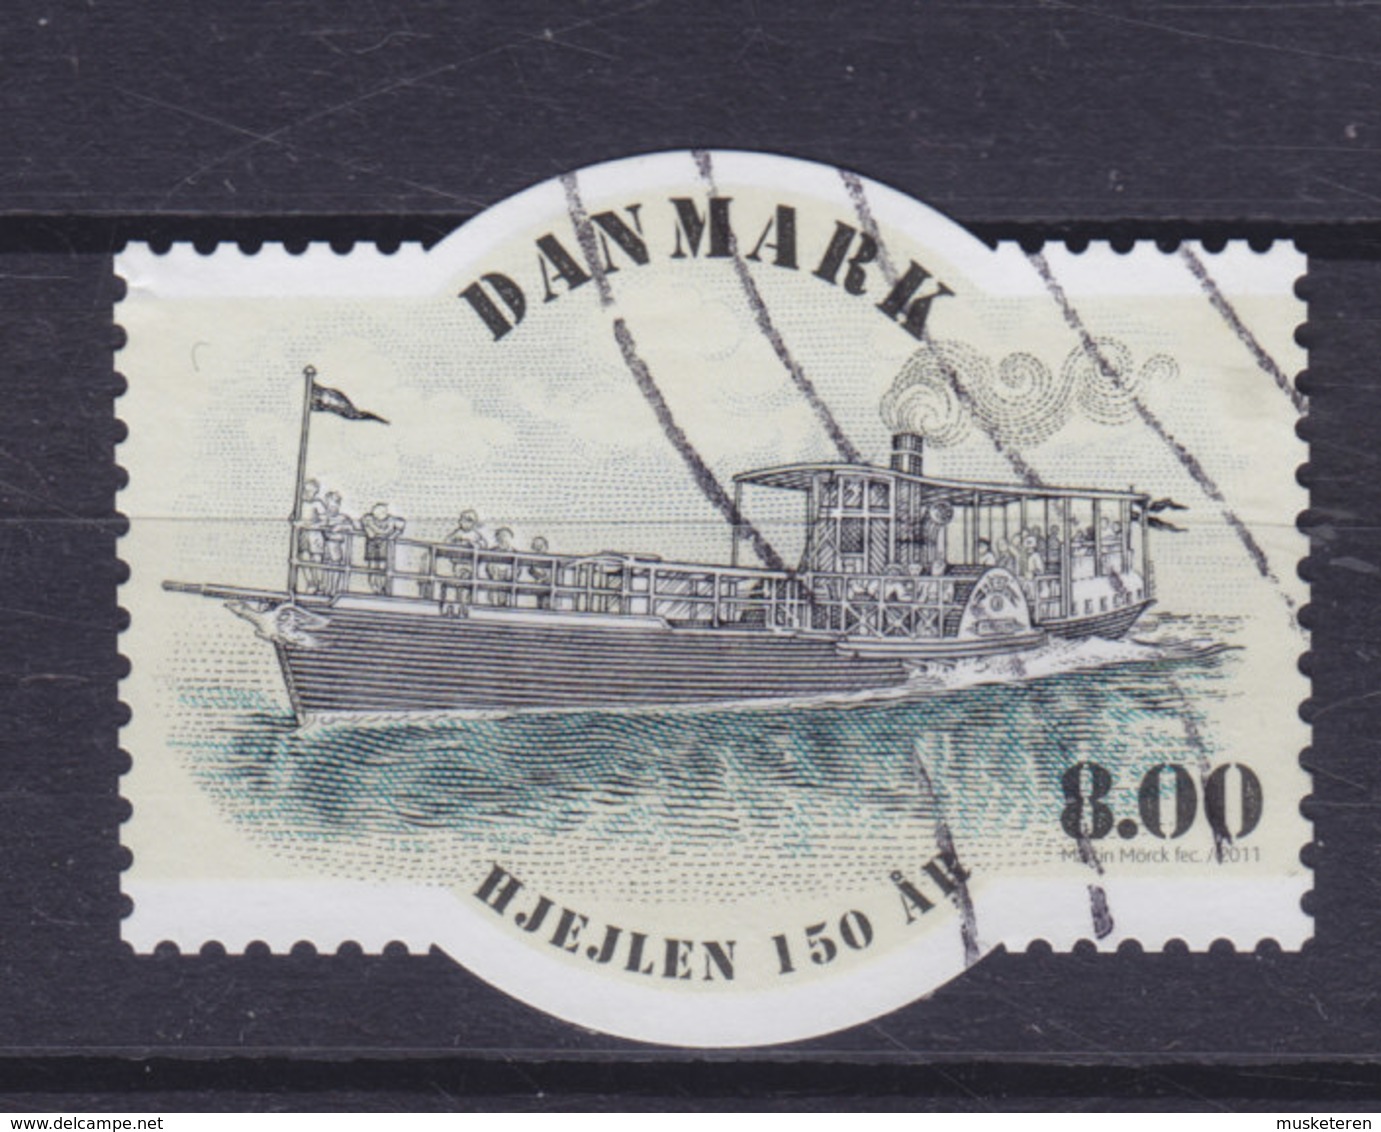 Denmark 2011 Mi. 1660   8.00 Kr. Schiff Ship "Hjejlen" 150 Year Anniversary - Used Stamps